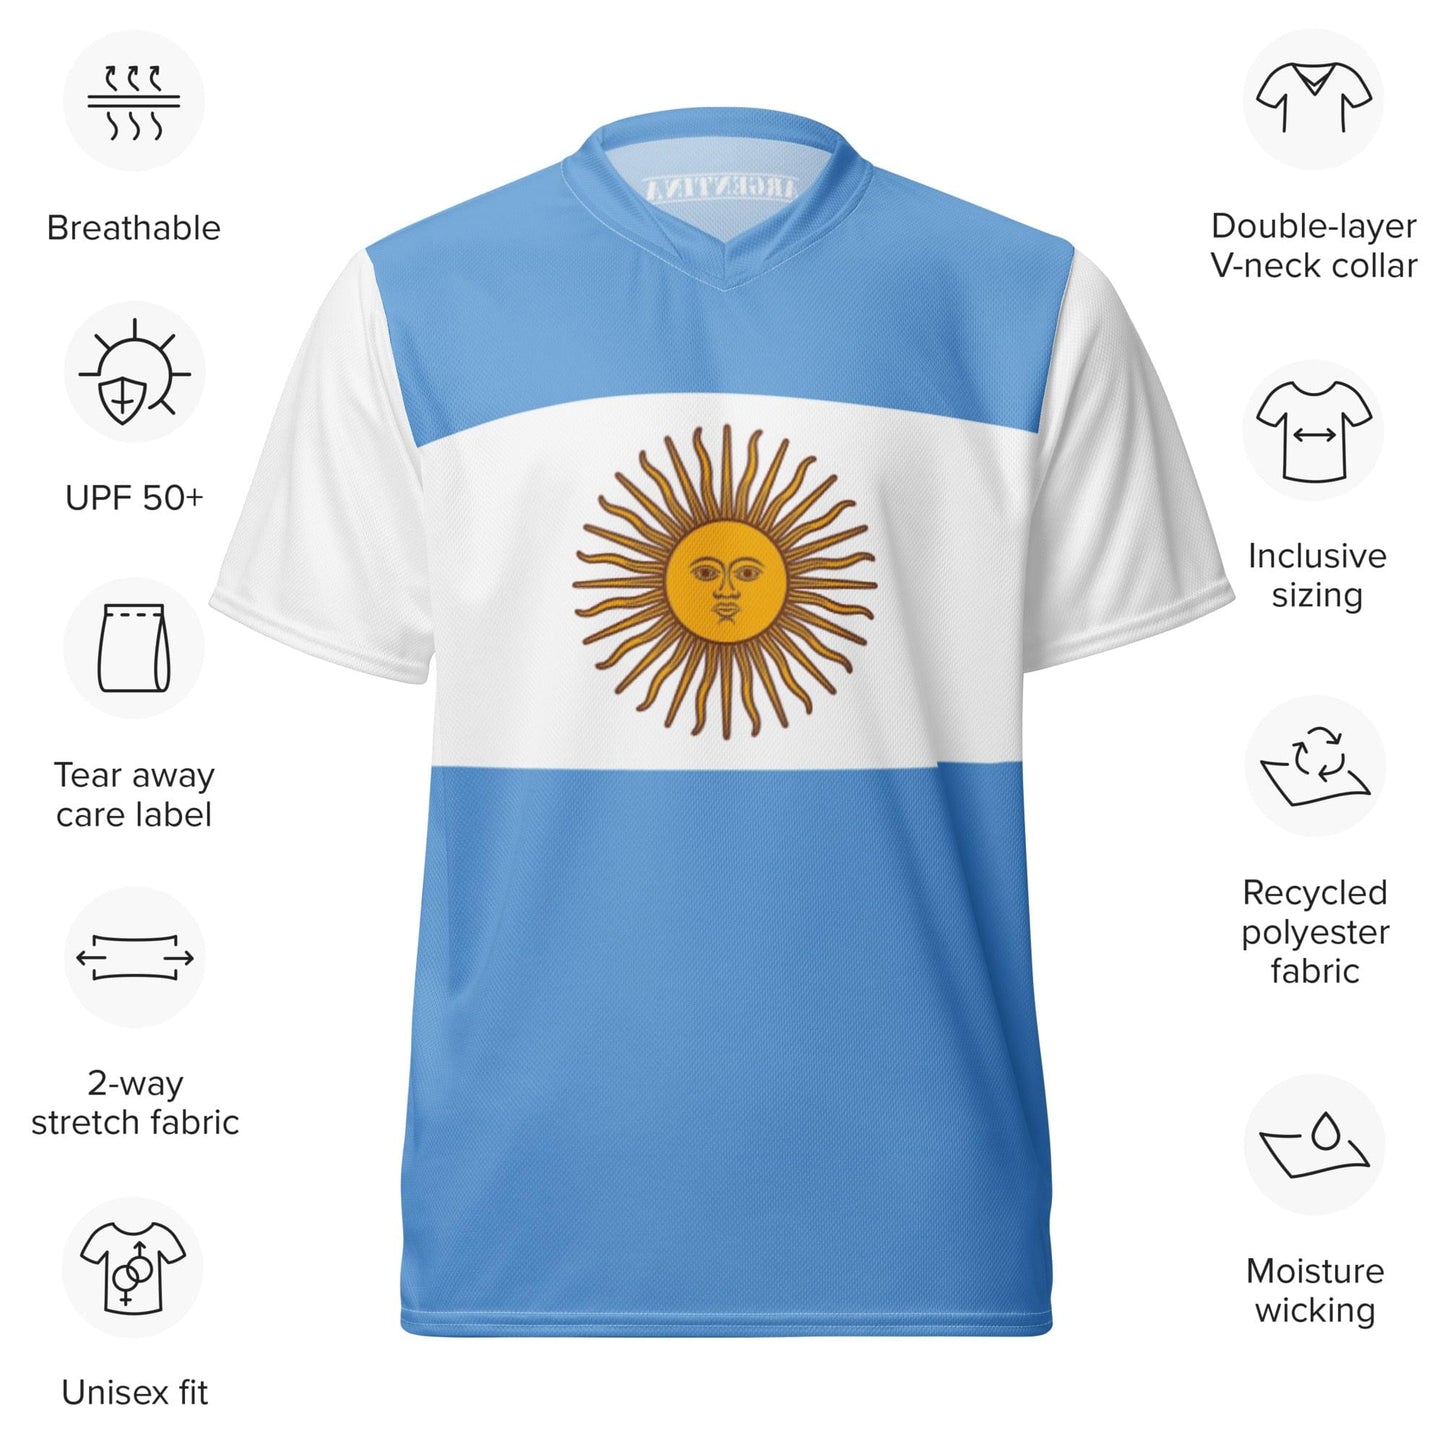 Camiseta deportiva unisex de poliéster reciclado con bandera de Argentina, tallas 2XS - 6XL